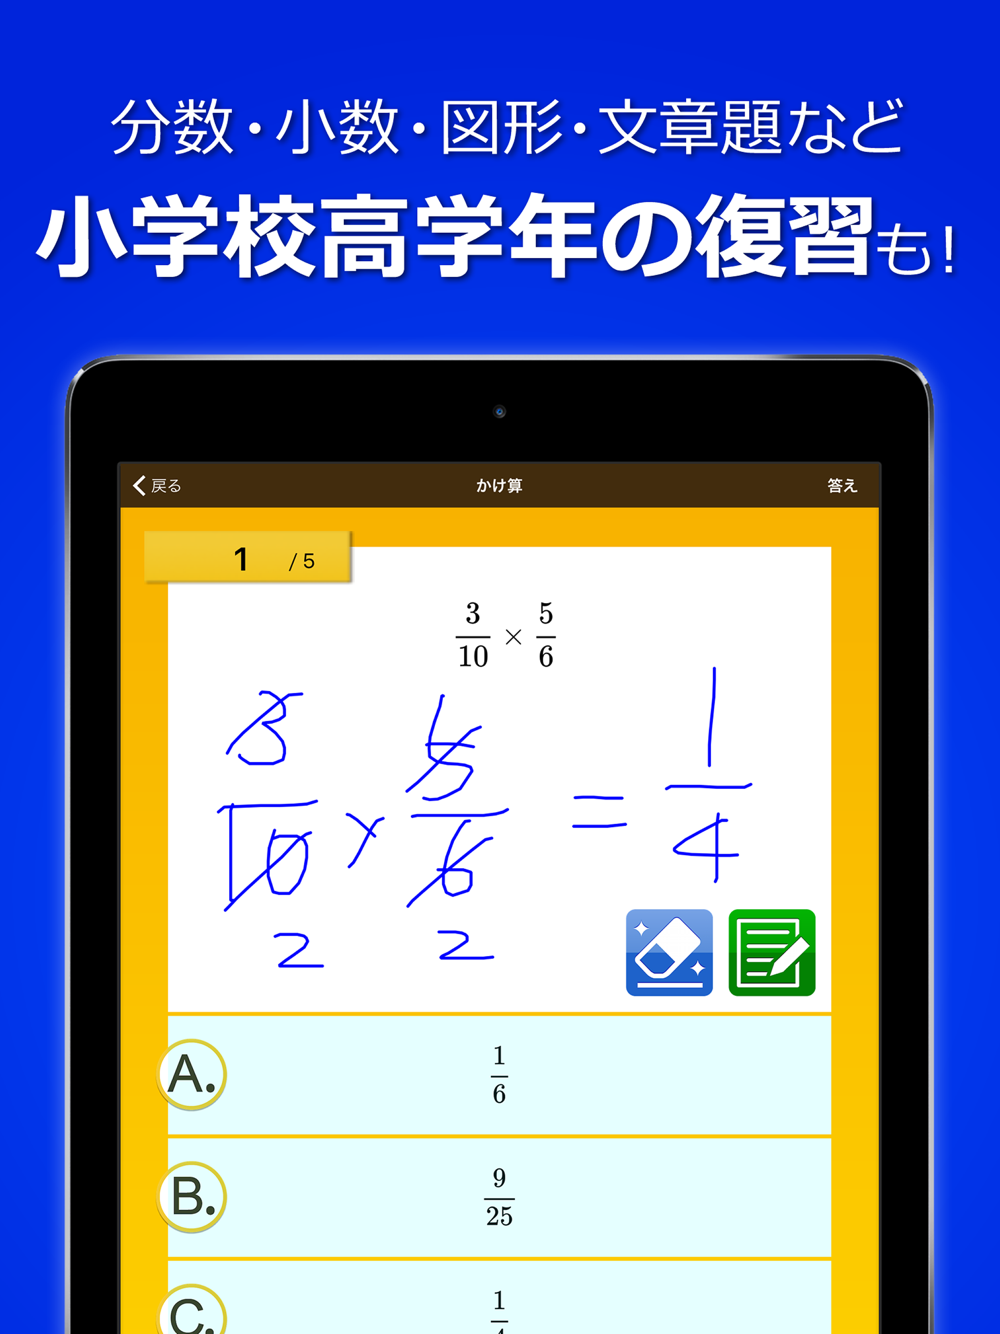 数学トレーニング 中学1年 2年 3年の数学計算勉強アプリ Free Download App For Iphone Steprimo Com